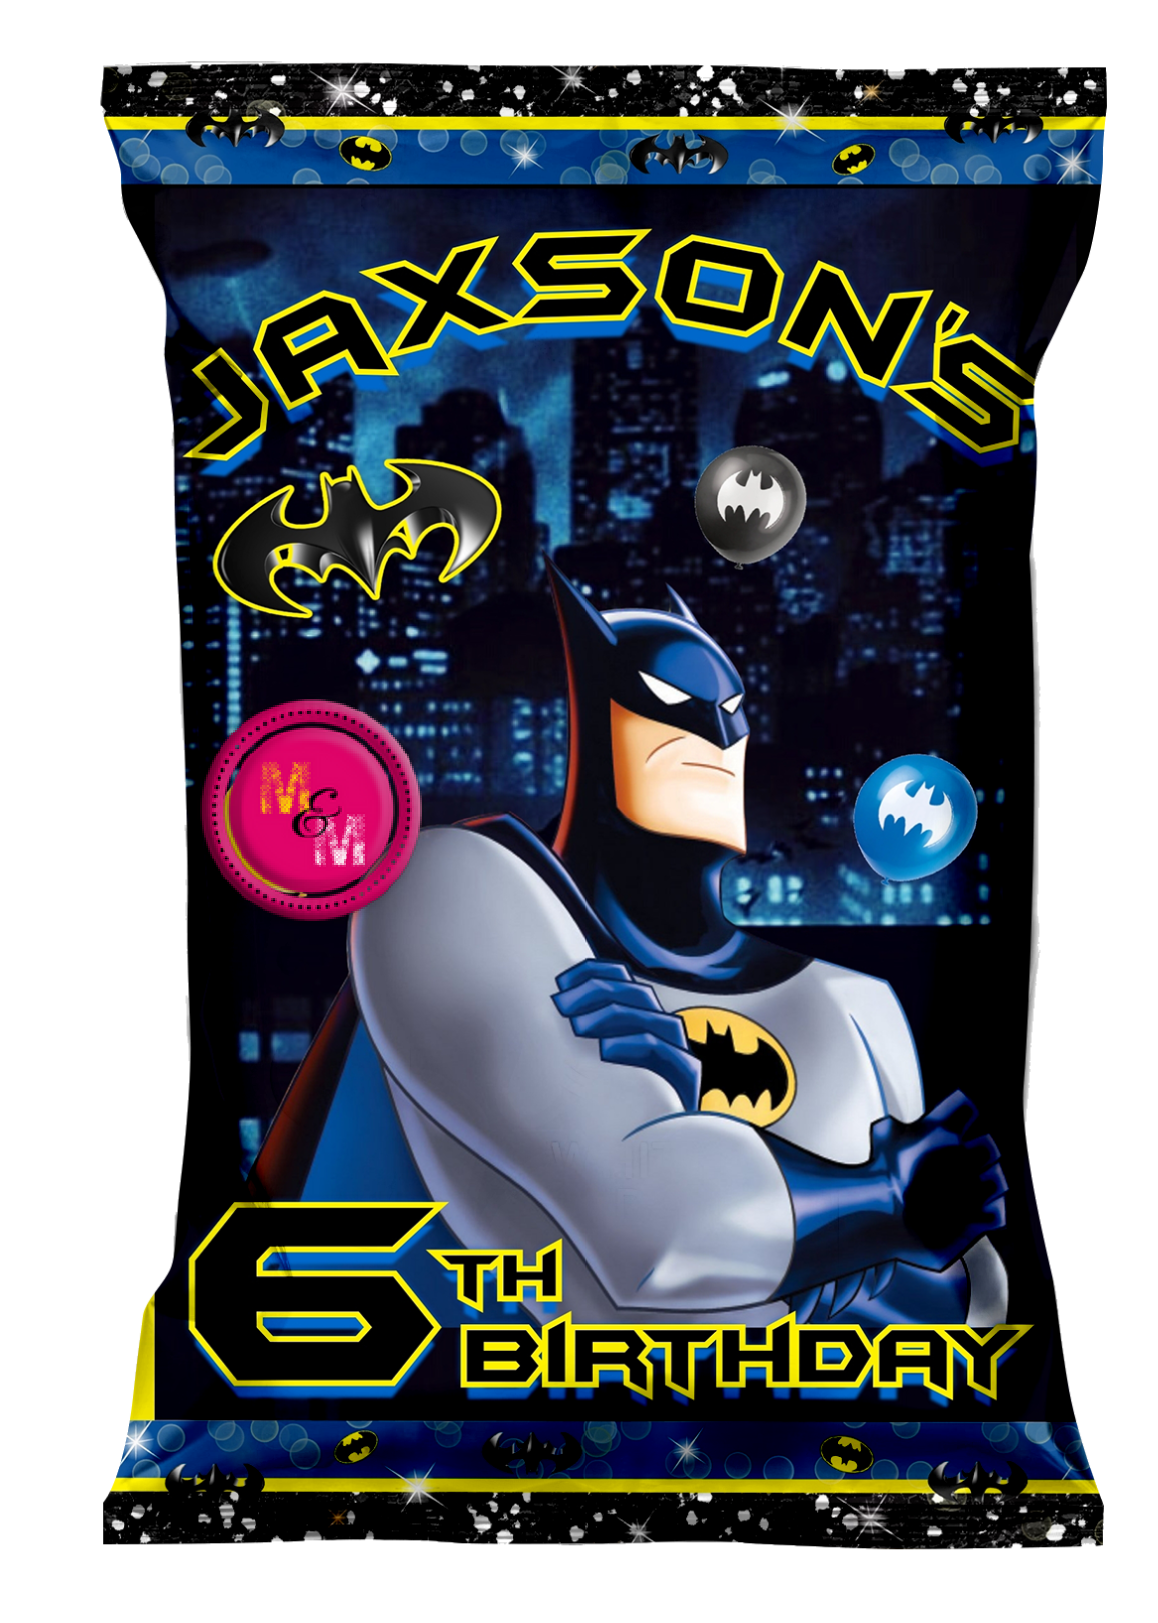 Editable Superhero Bat Chip Bag & Juice Pouch Set, Superhero Bat Party Favors